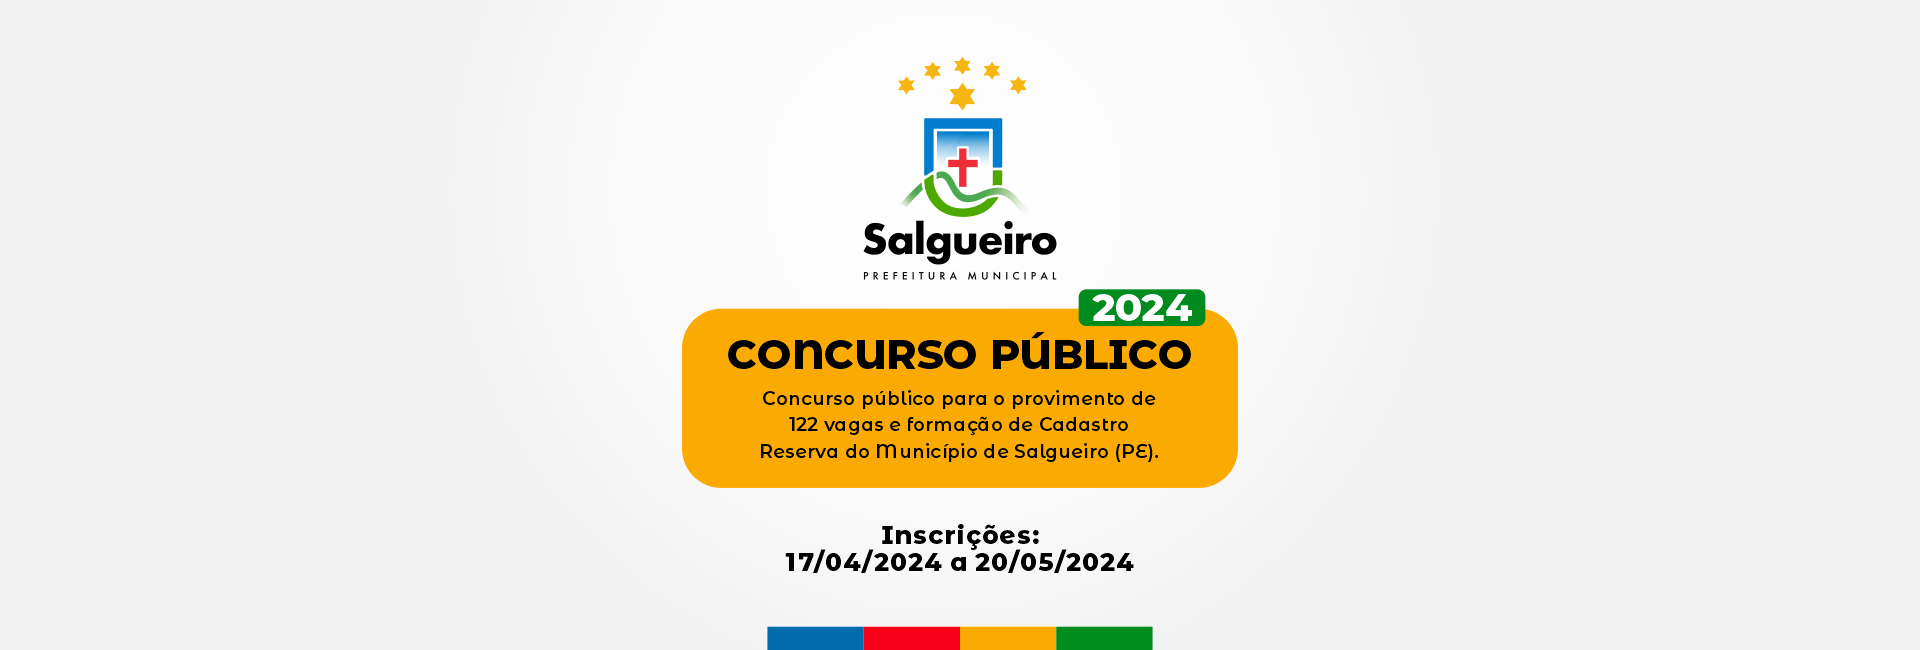 CONCURSO PÚBLICO 2024.